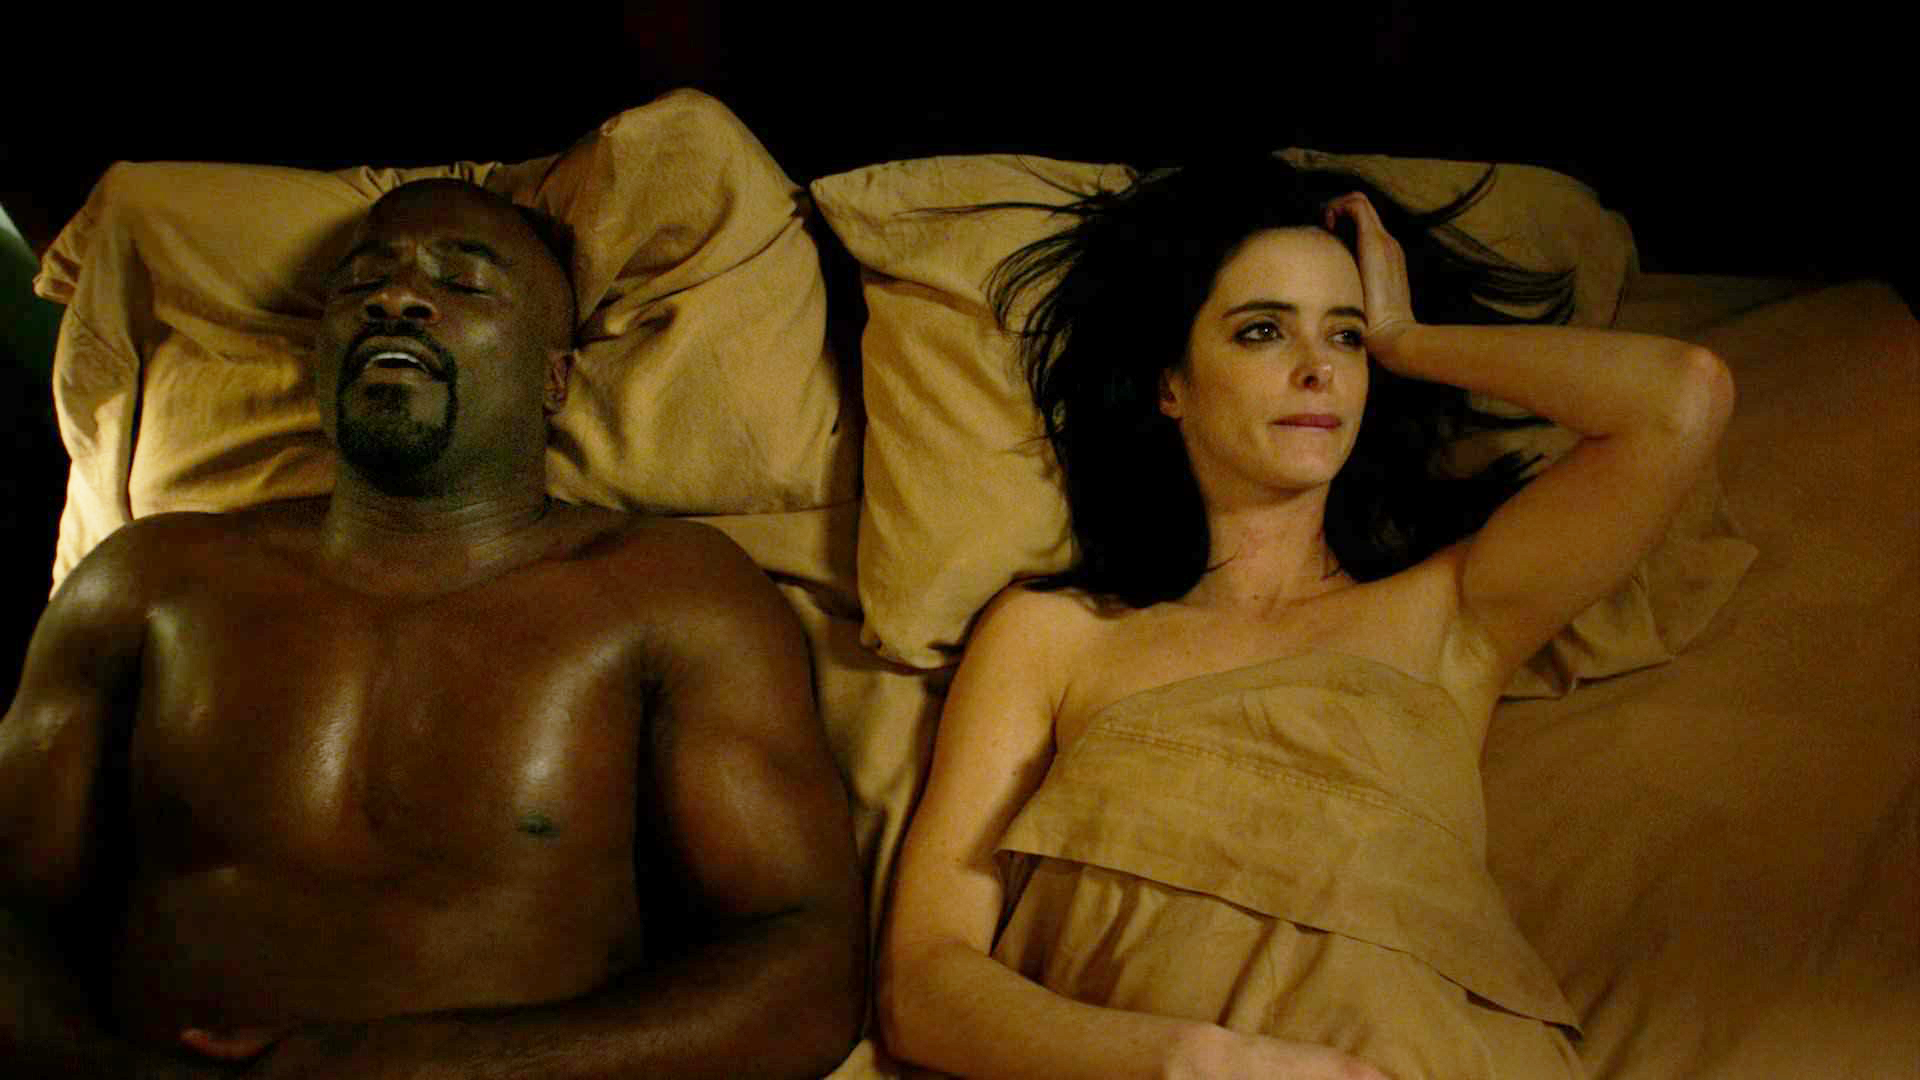 Netflix: i film e le serie TV con le scene di sesso più hot- Film.it